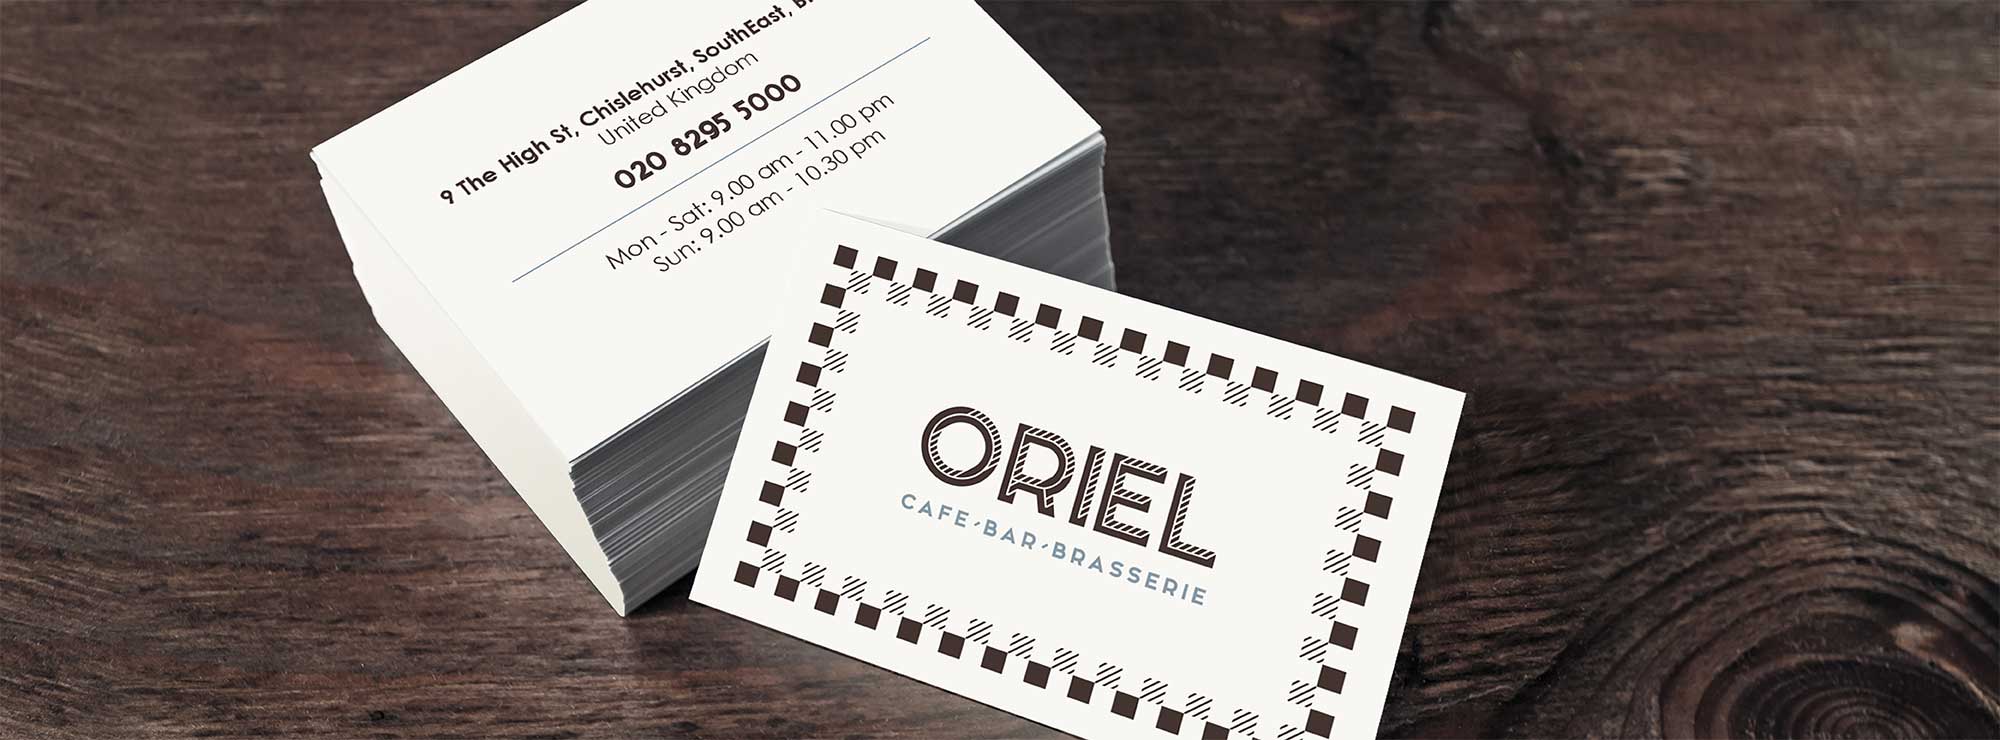 Oriel - a checkered identity